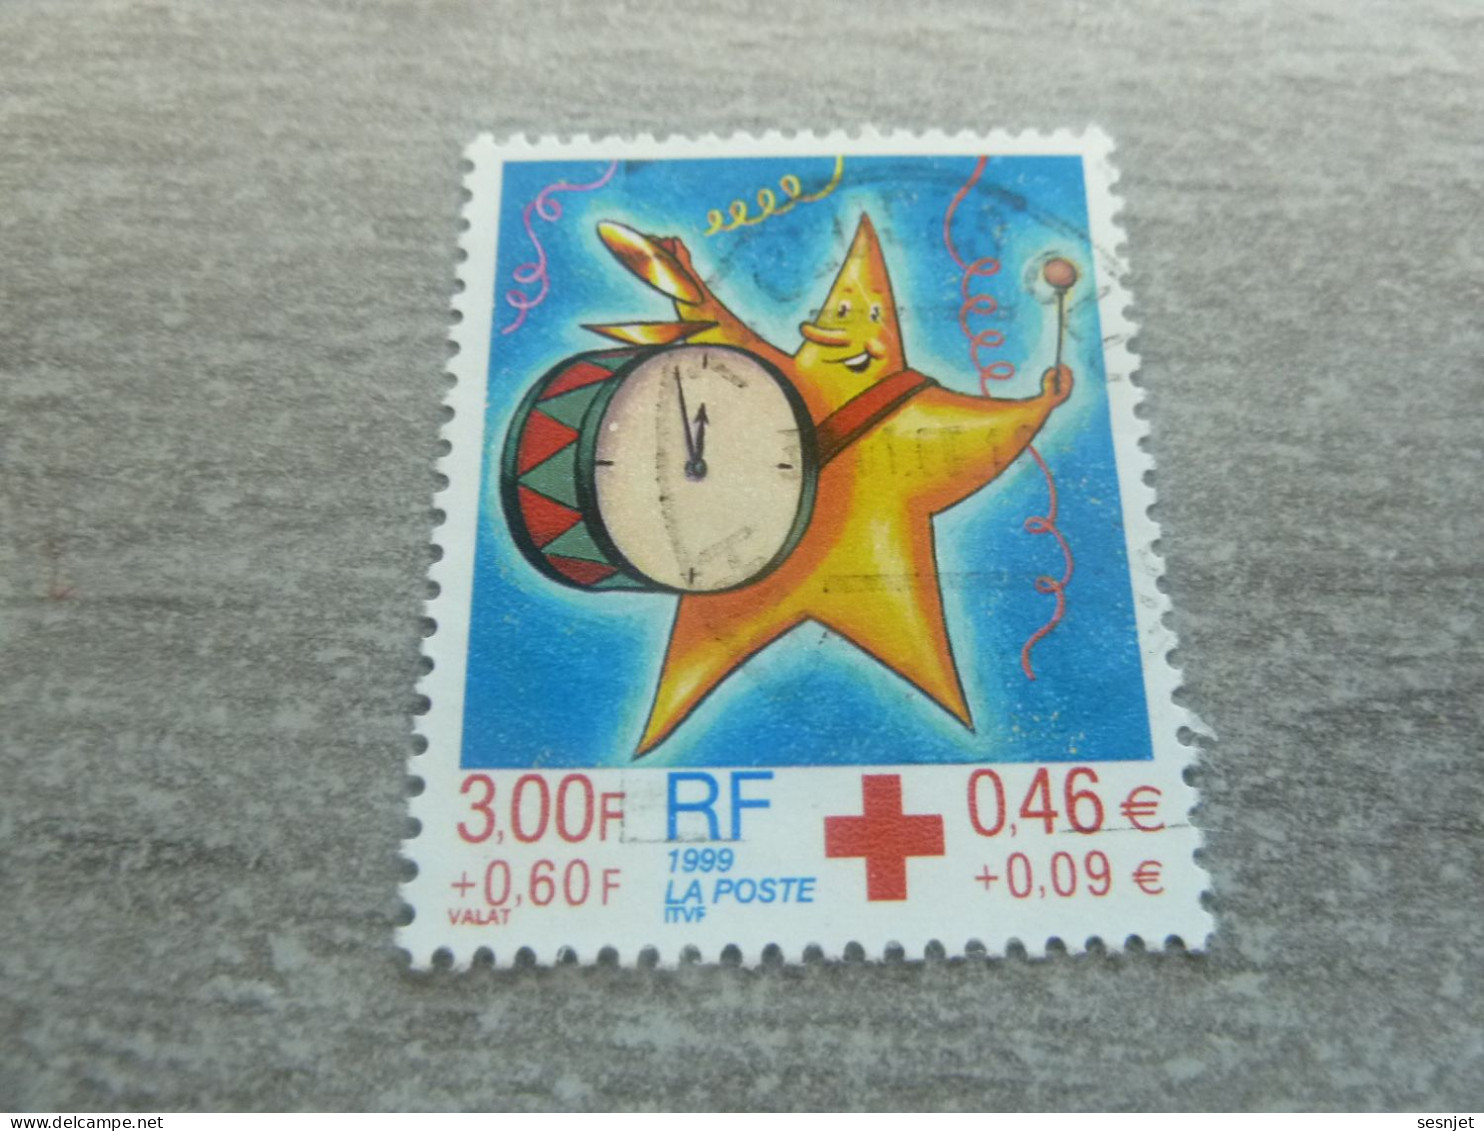 Croix-Rouge - Fêtes De Fin D'Année - 3f.+0.60c. (0.46+0.09 €) - Yt 3288 - Multicolore - Oblitéré - Année 1999 - - Croix-Rouge